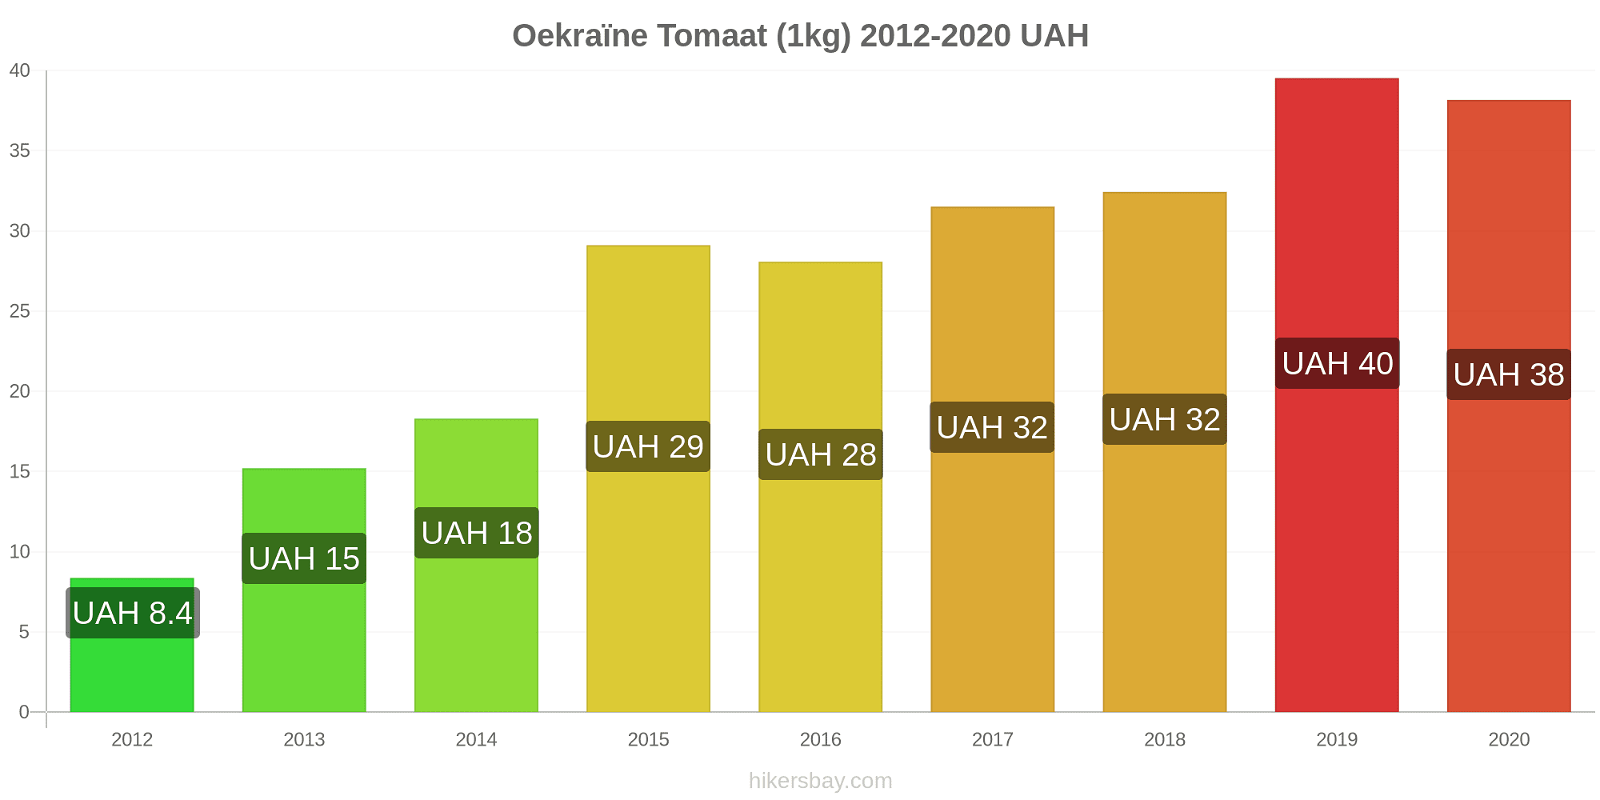 Oekraïne prijswijzigingen Tomaat (1kg) hikersbay.com